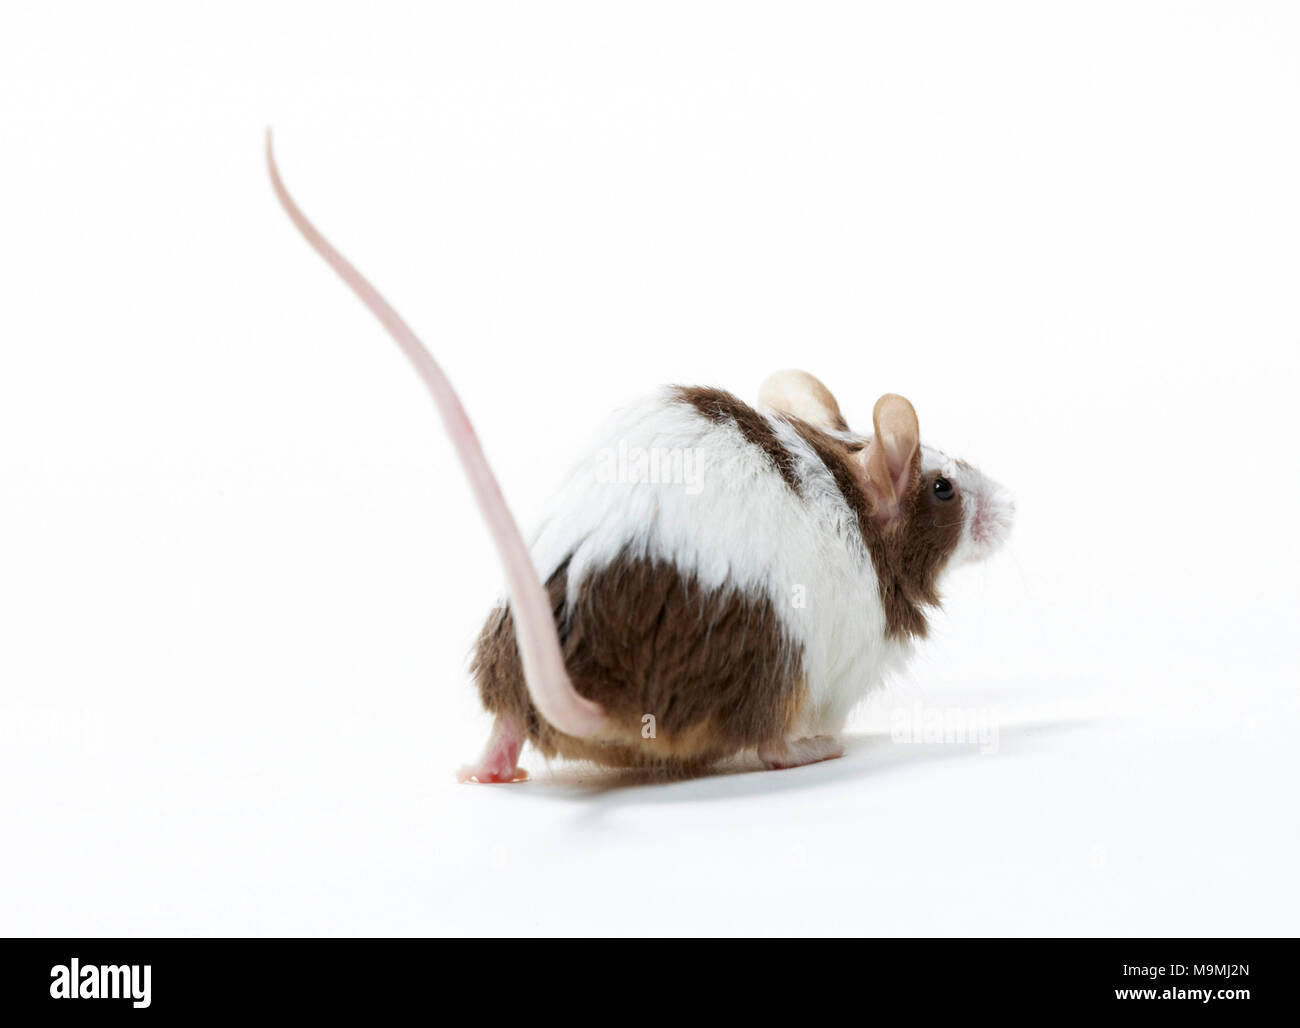 Fancy Maus. Zweifarbige nach wandern, von hinten gesehen. Studio Bild auf weißem Hintergrund Stockfoto